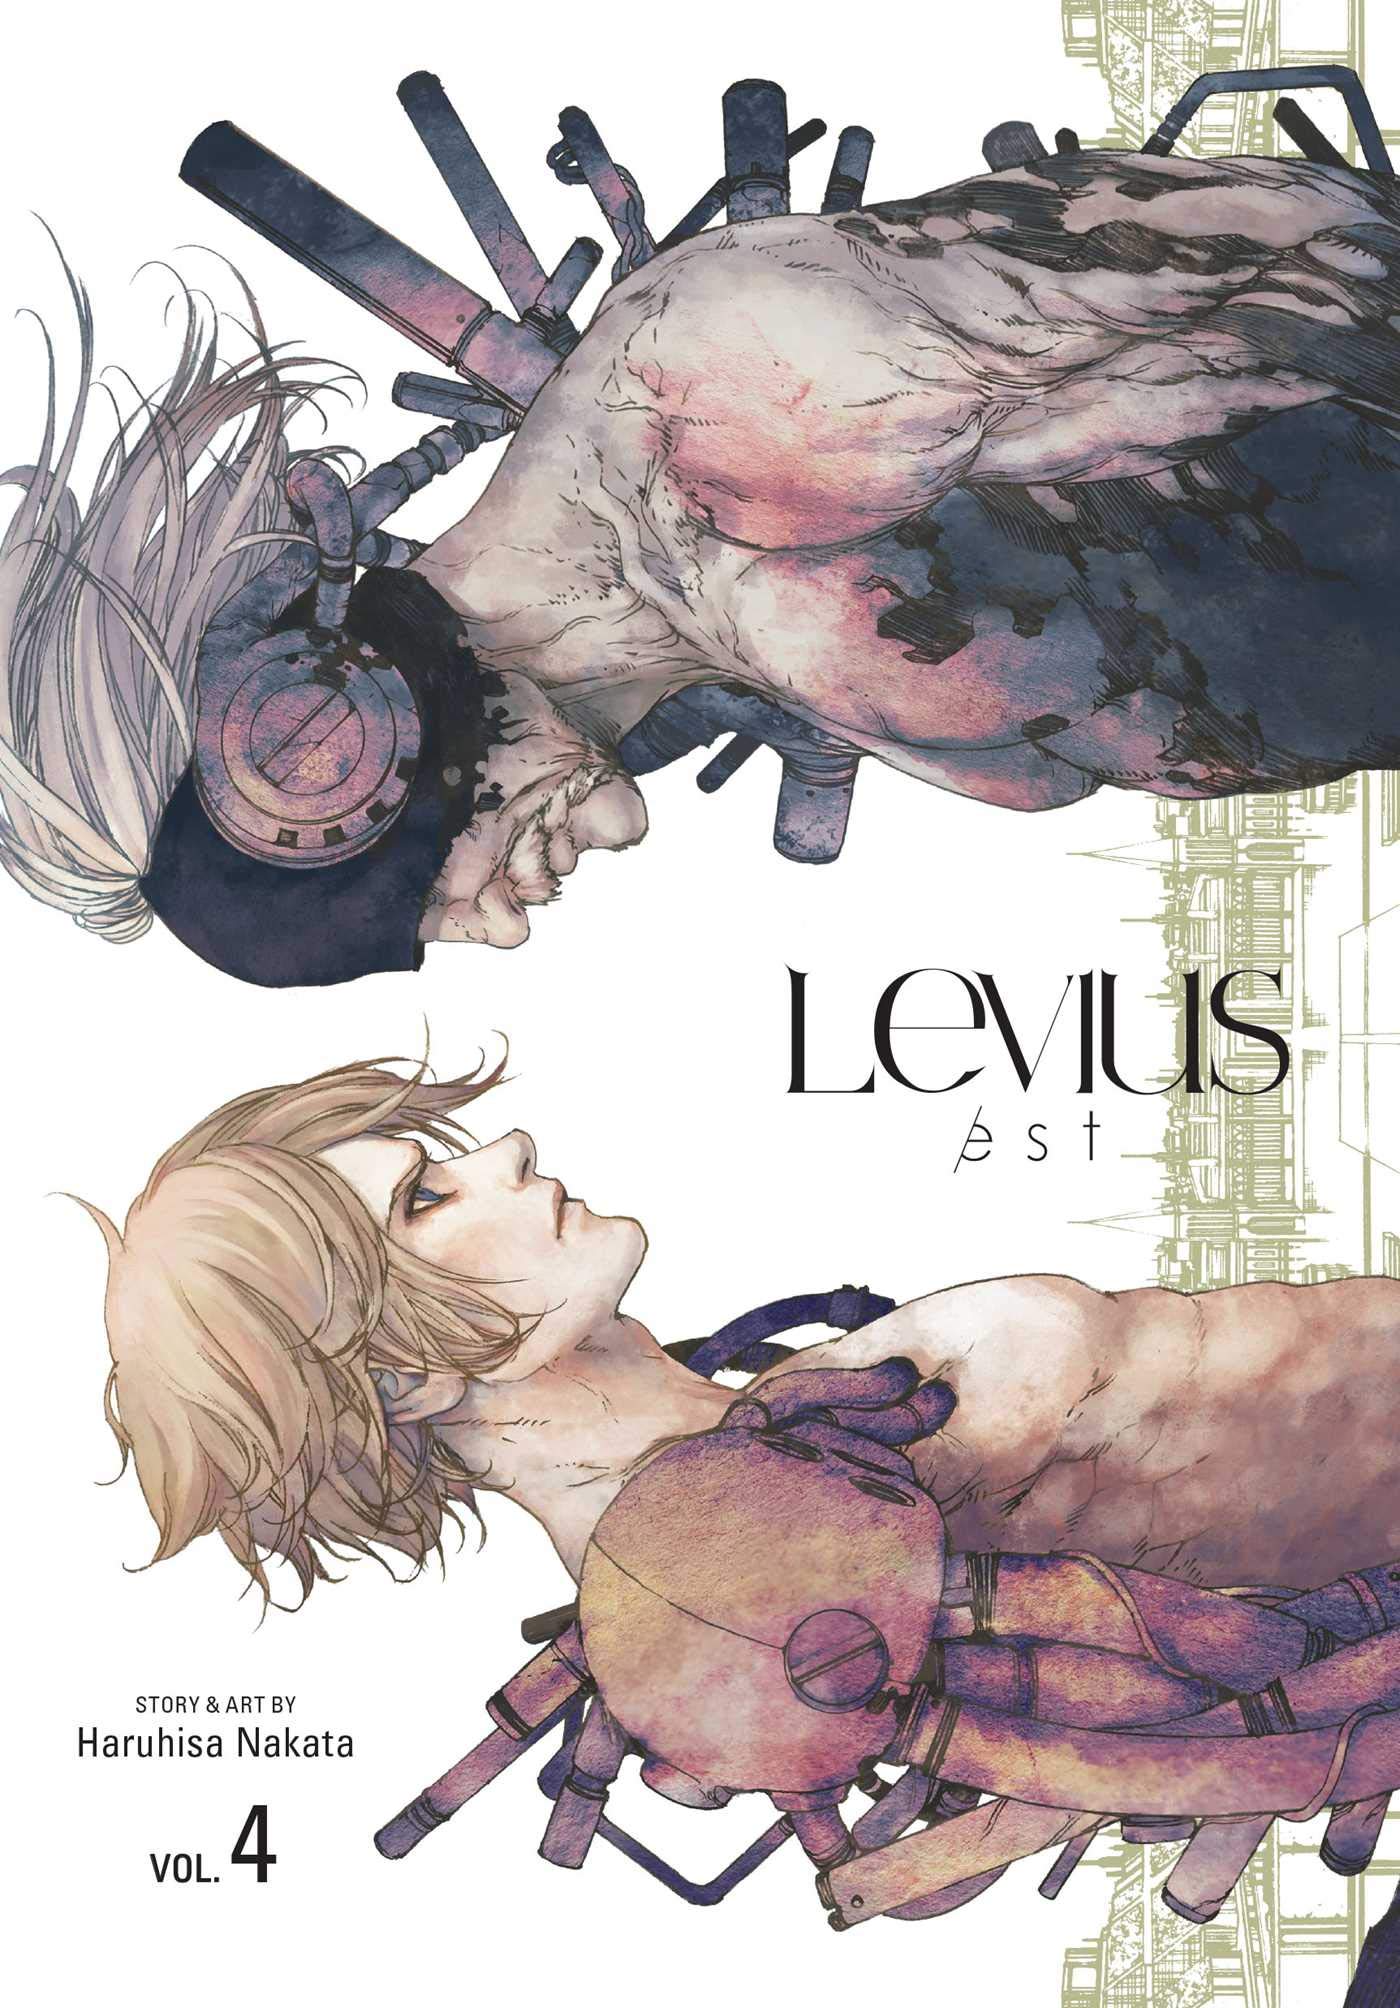 Levius/est, Vol. 4 | Haruhisa Nakata